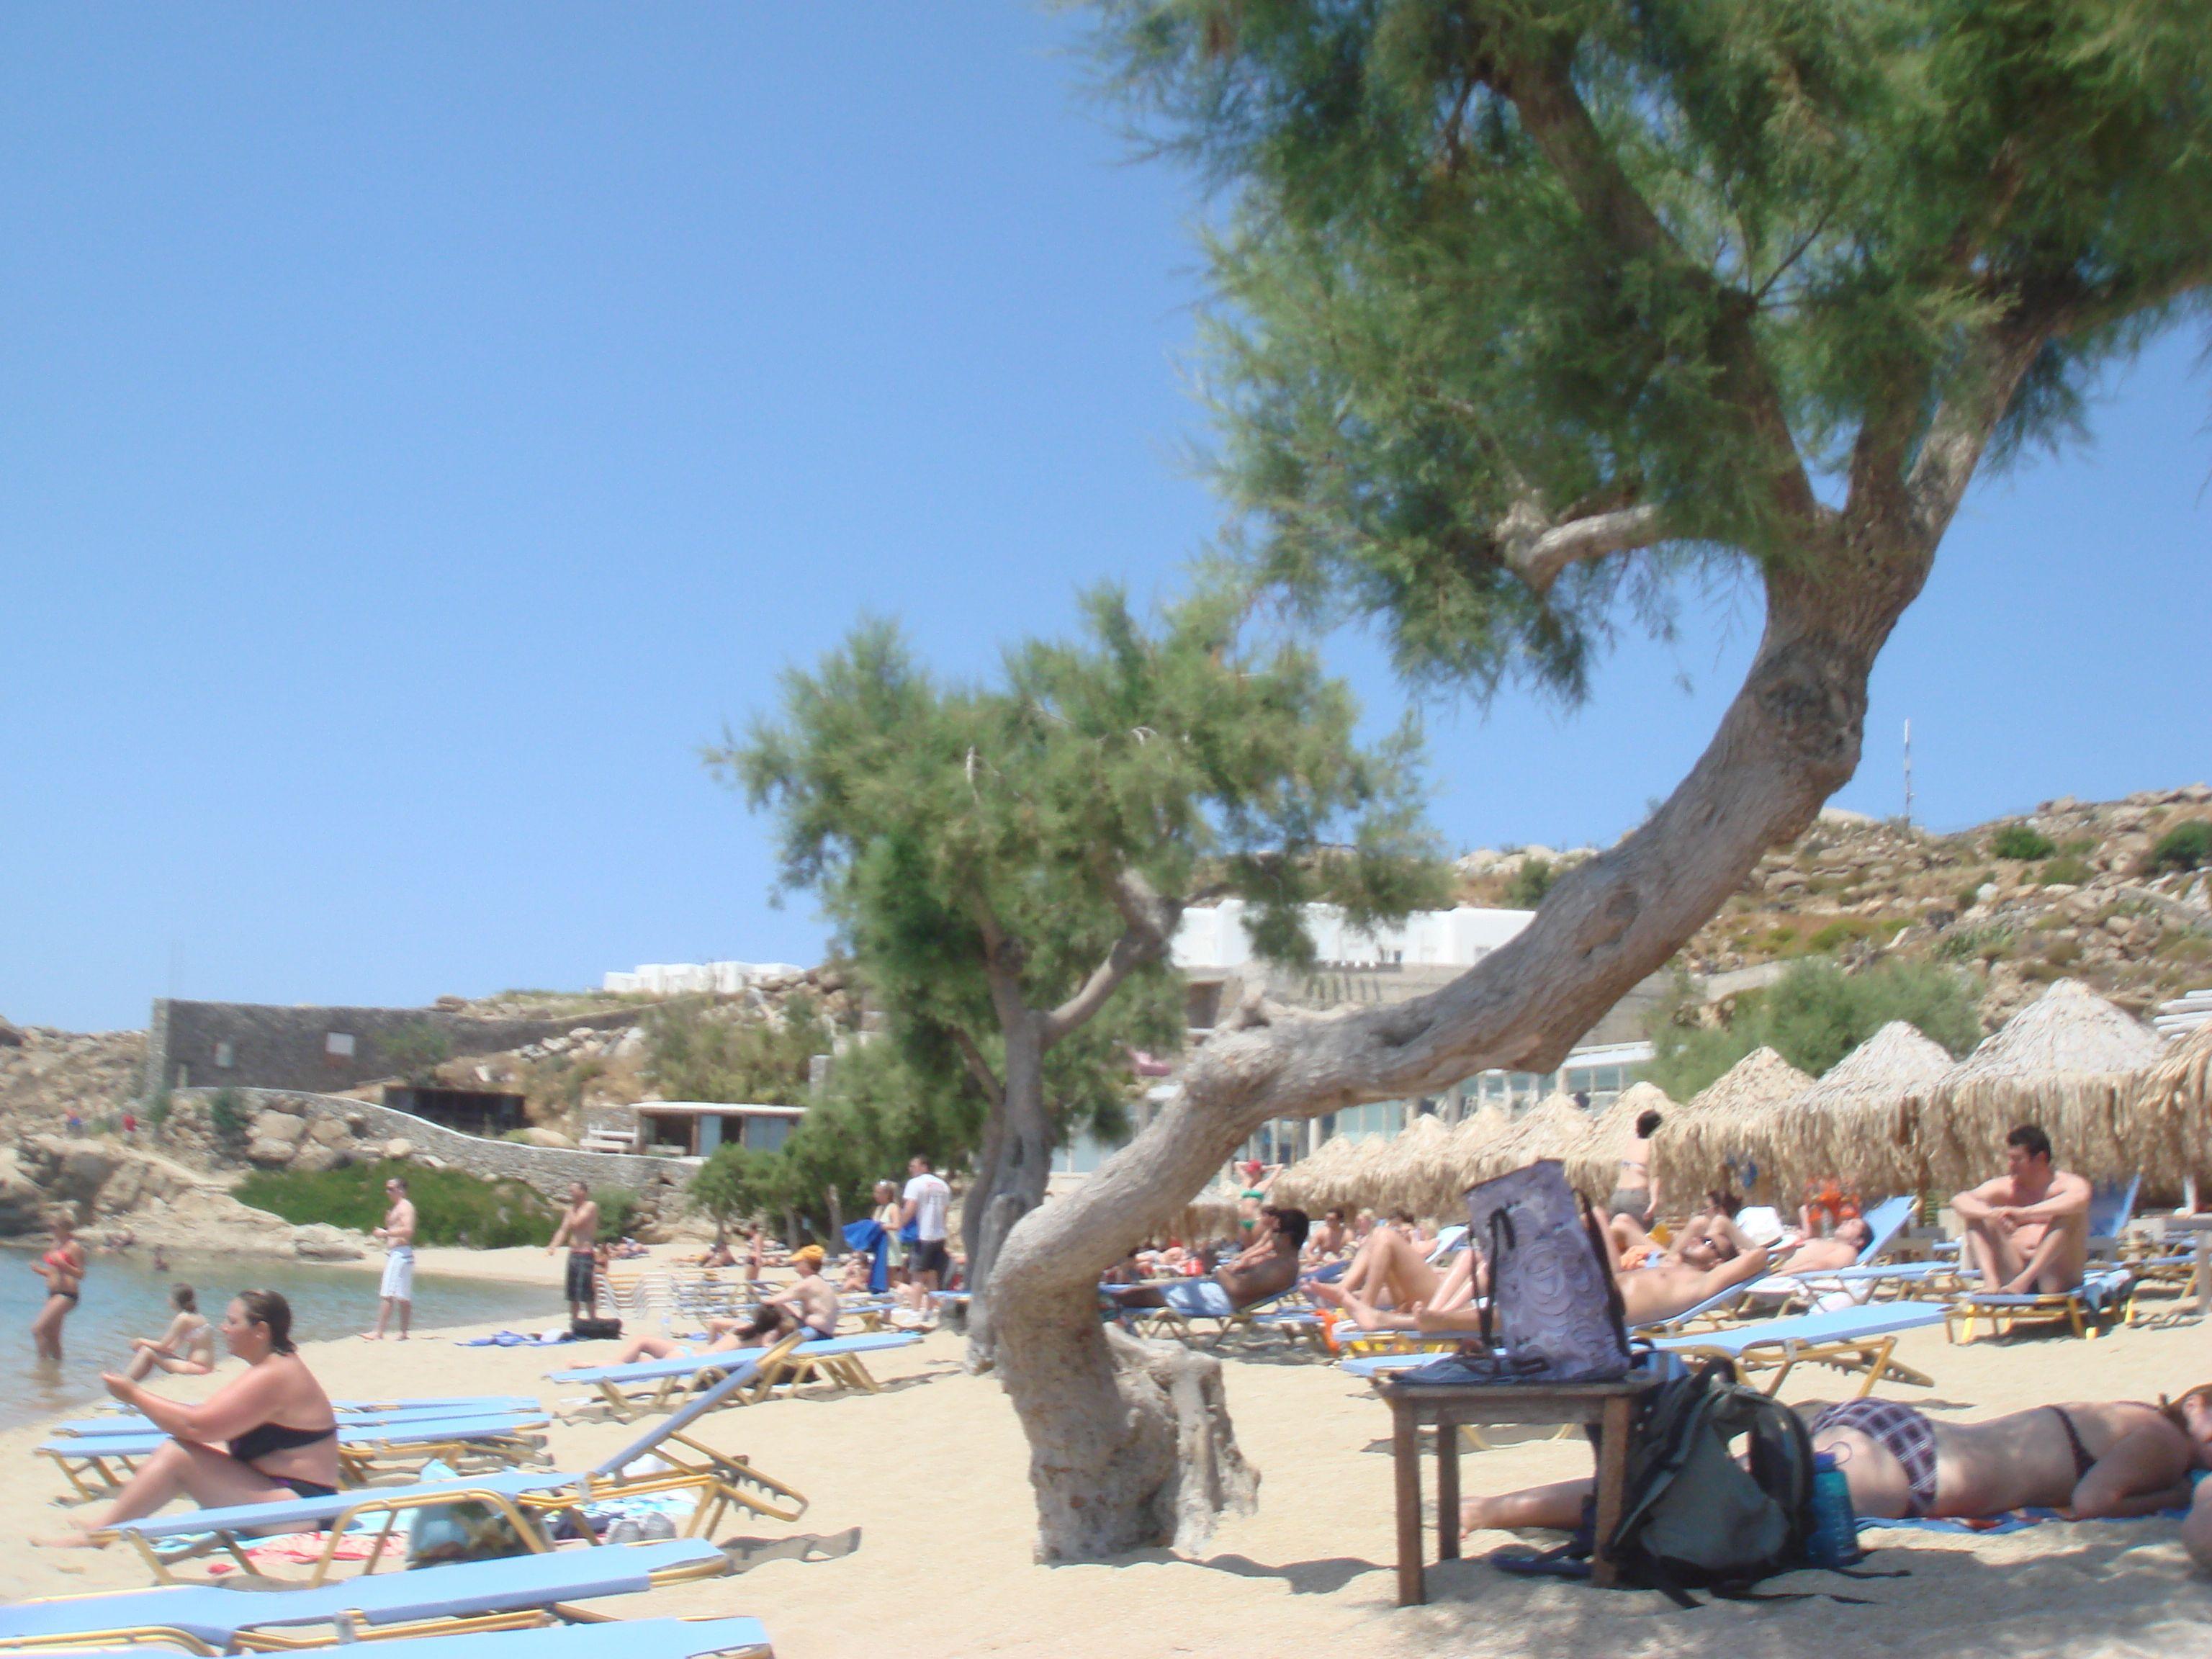 3072x2304 Bãi biển Thiên đường Mykonos ở Hy Lạp - Hình nền 4k.  Hình nền 4K miễn phí